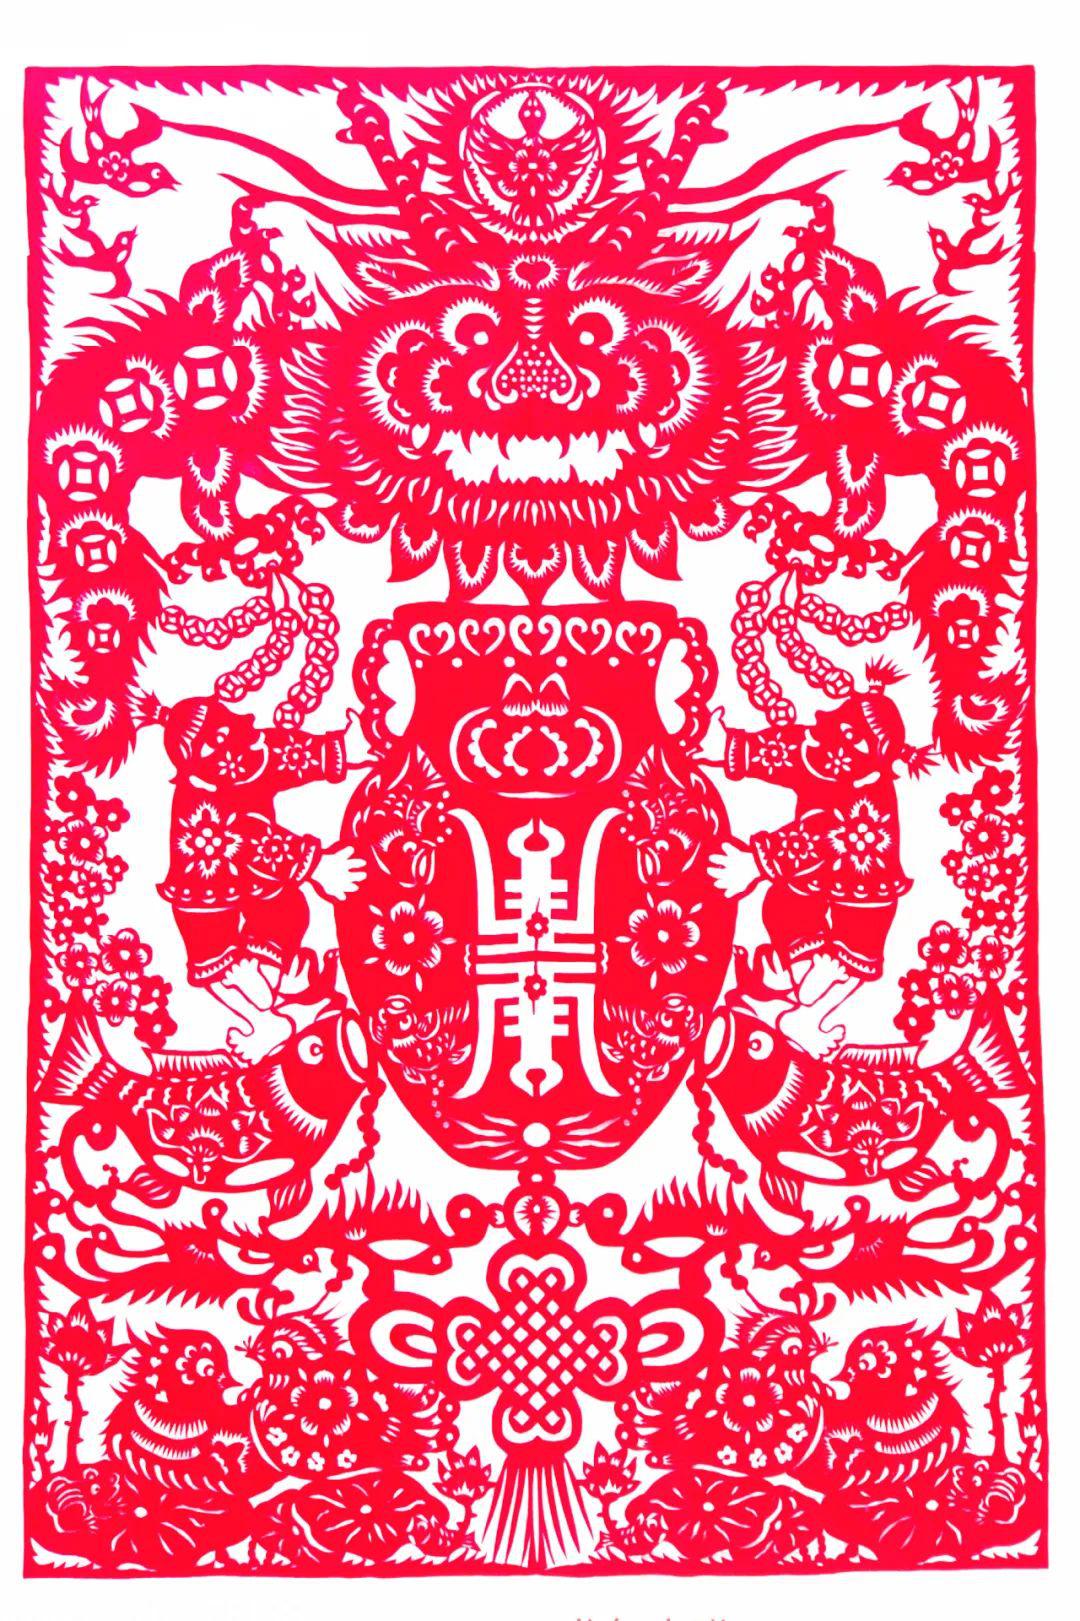 中国民间剪纸微刊《百年献瑞迎新年》全国龙文化剪纸精品展览 图111